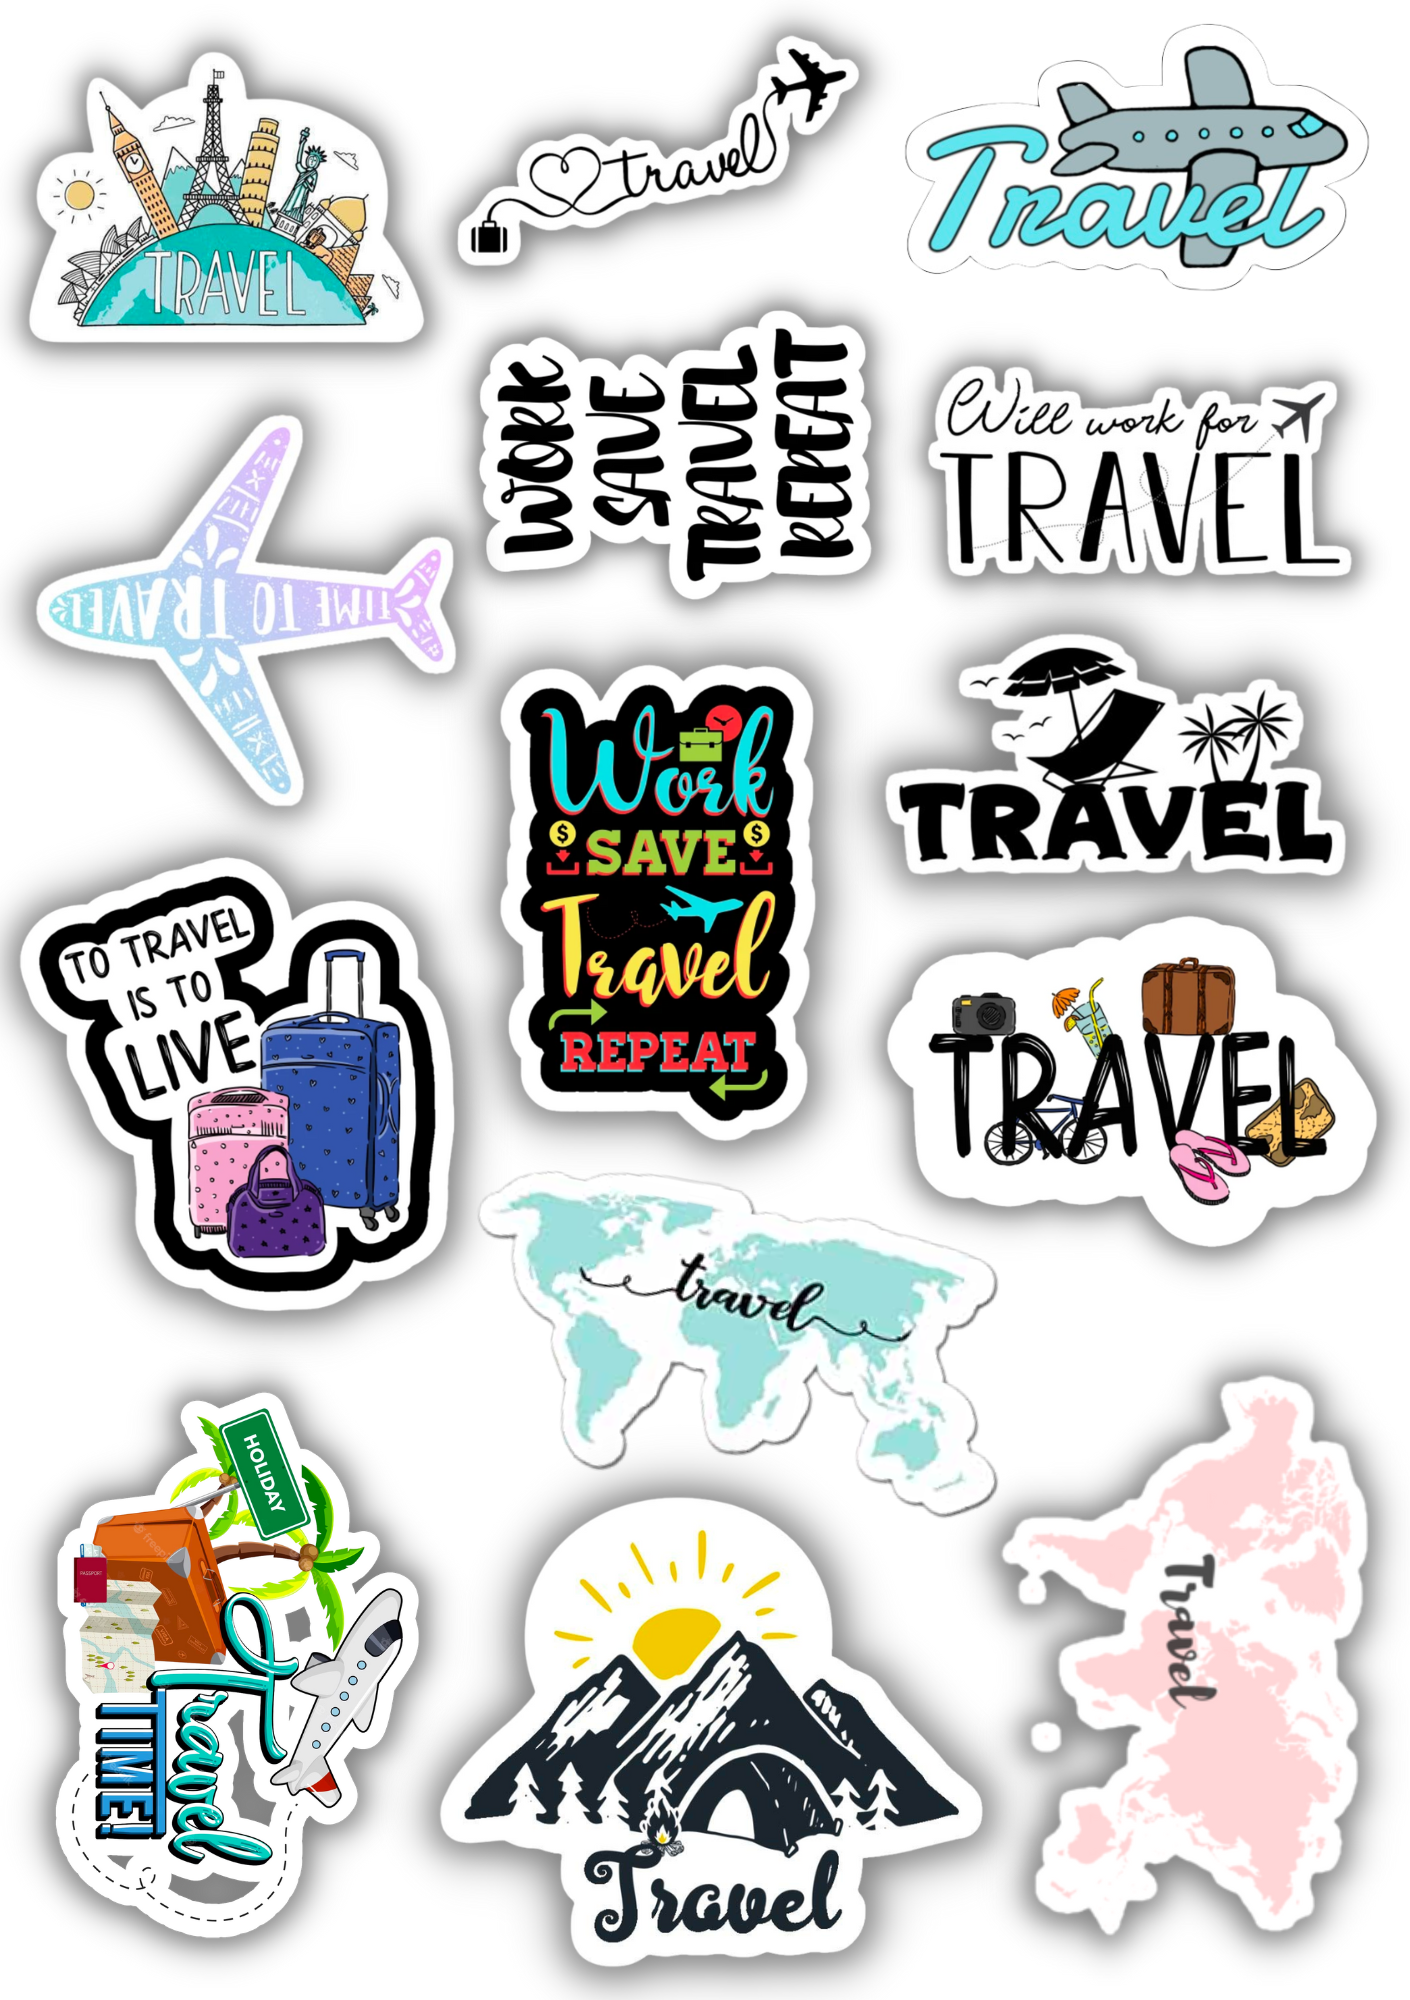 Travel lover sticker